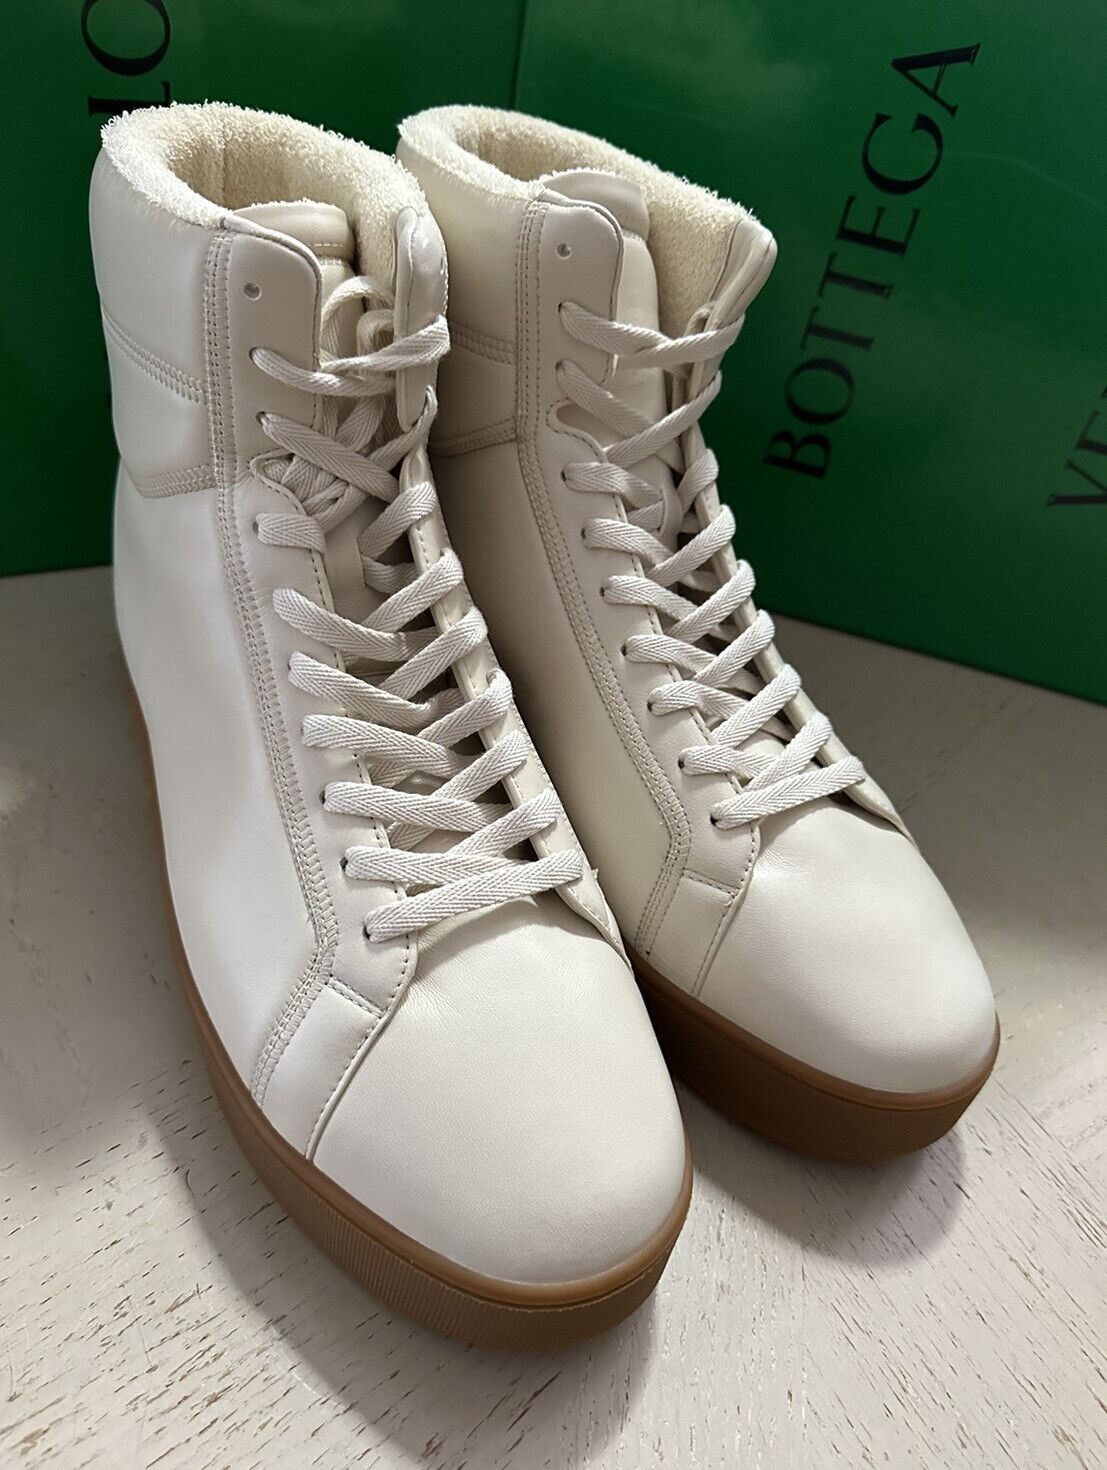 NIB 950 $ Bottega Veneta Herren-Leder-High-Top-Sneaker-Schuhe Weiß 10 US/43 Eu